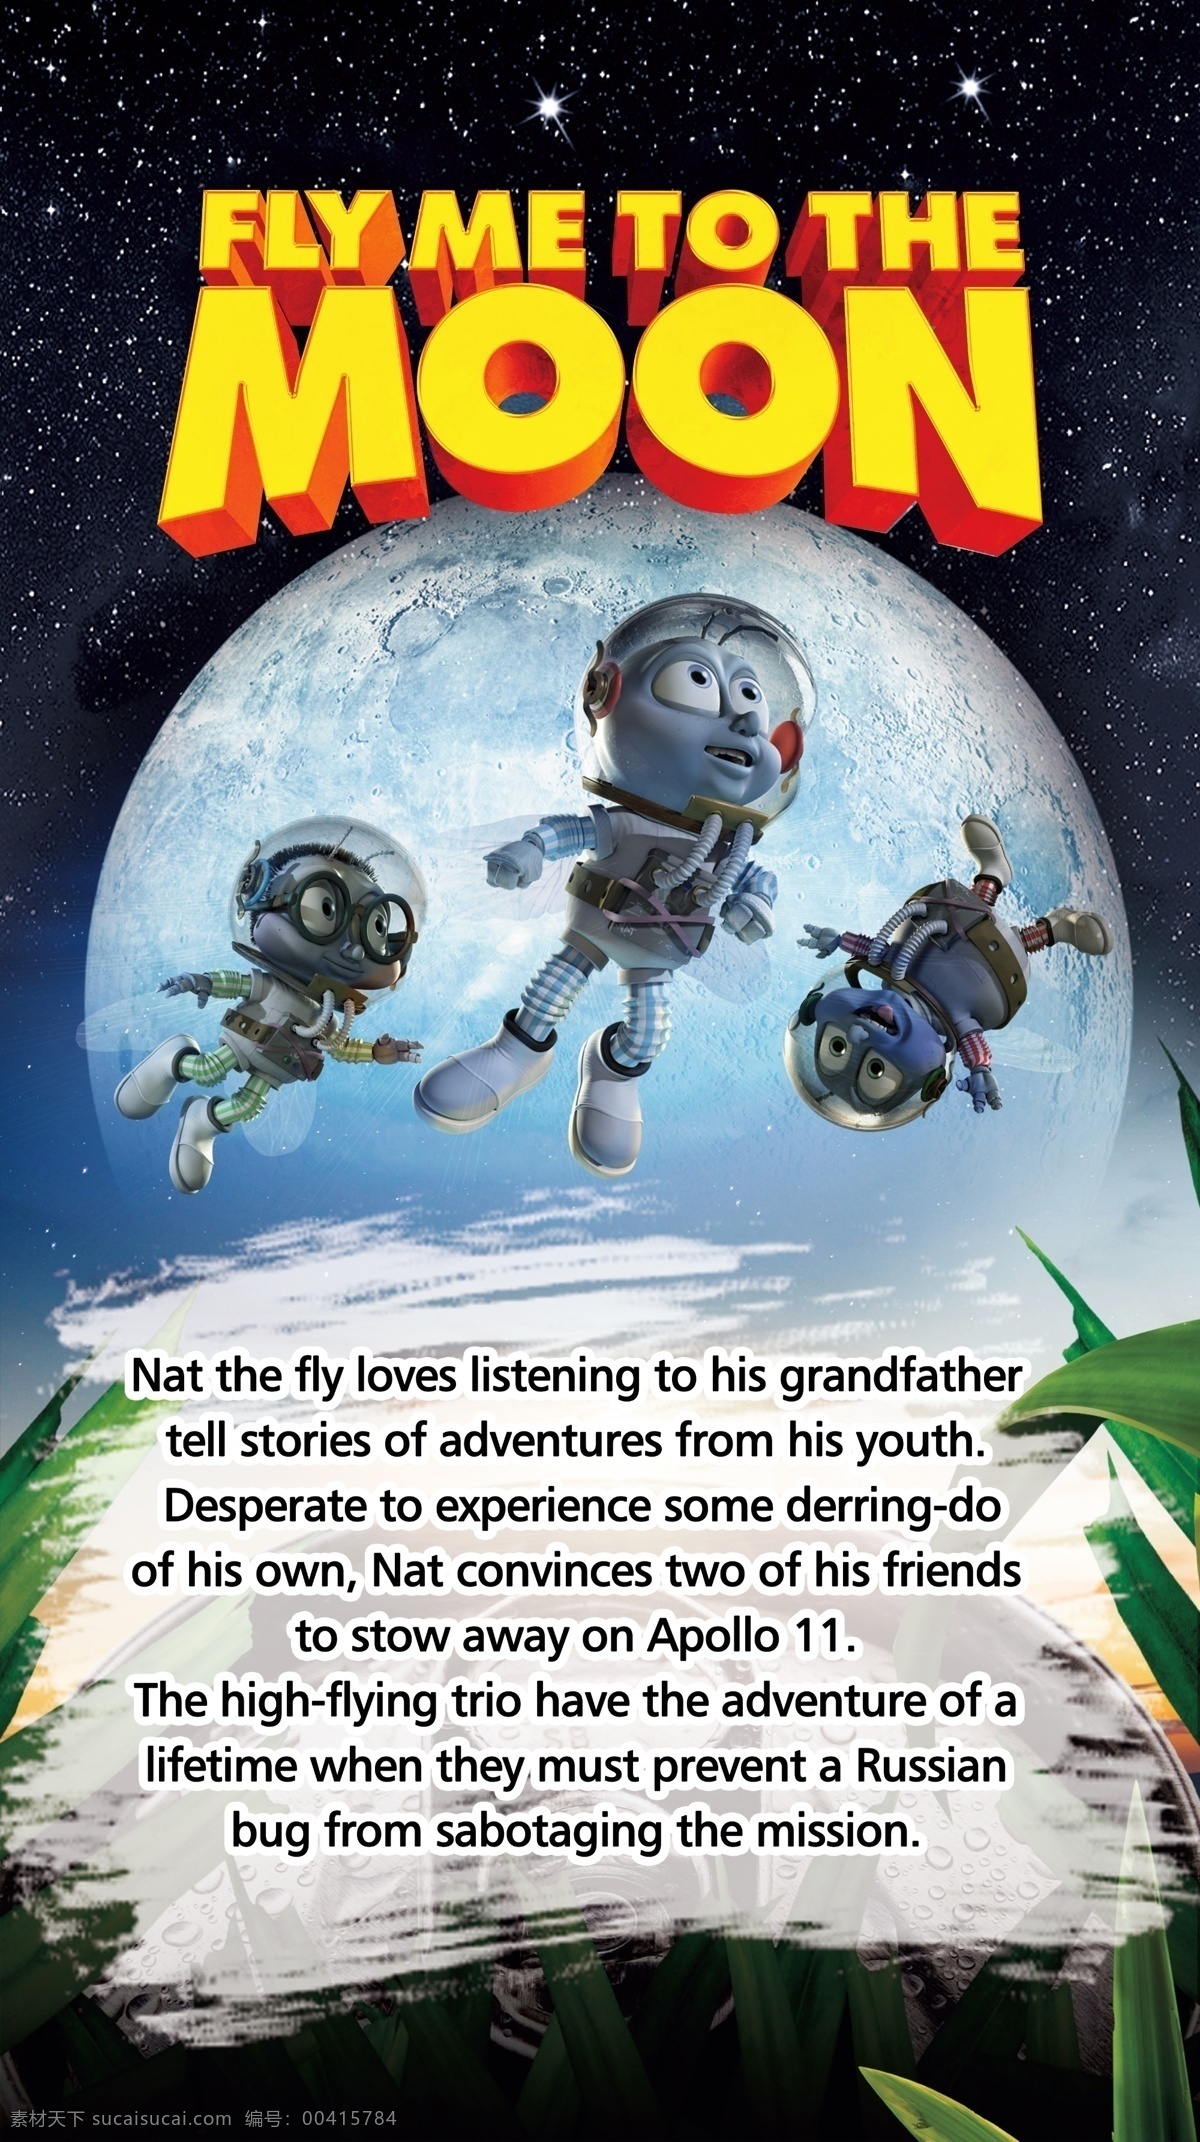 月球大冒险 月球 moon 小蚂蚁 卡通人物 动画片 电影海报 主题 星空 月亮 卡通 可爱